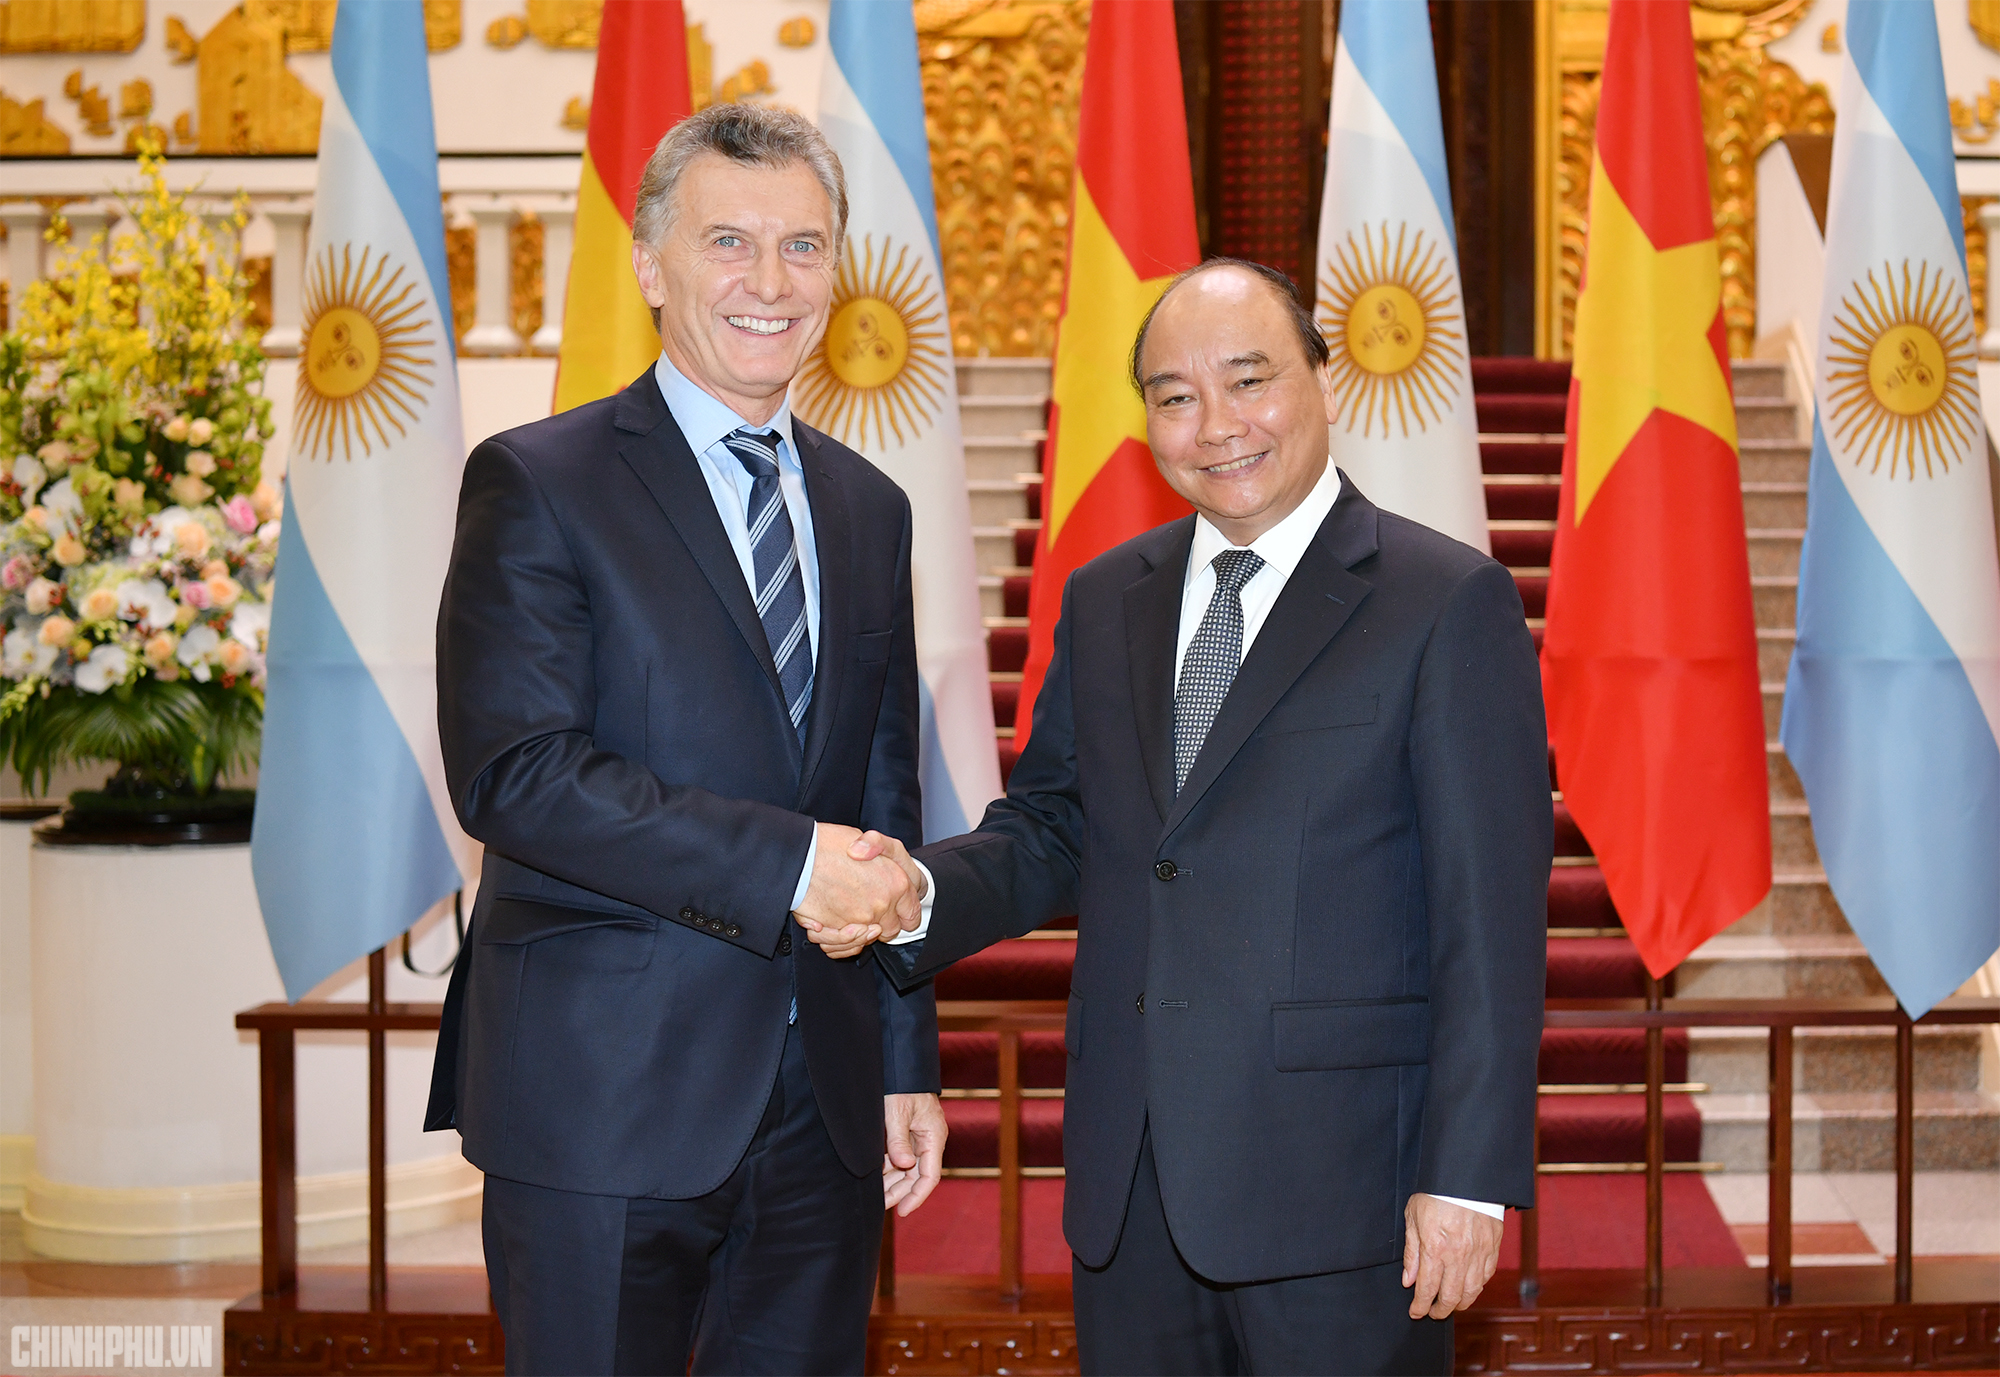 Đối tác Argentina: Argentina là một đối tác kinh tế và chính trị quan trọng của Việt Nam tại Nam Mỹ, với nhiều cánh cửa hợp tác mở ra cho doanh nghiệp hai nước. Hãy cùng khám phá thêm về tiềm năng của thị trường Argentinian và tìm kiếm những cơ hội hợp tác mới.